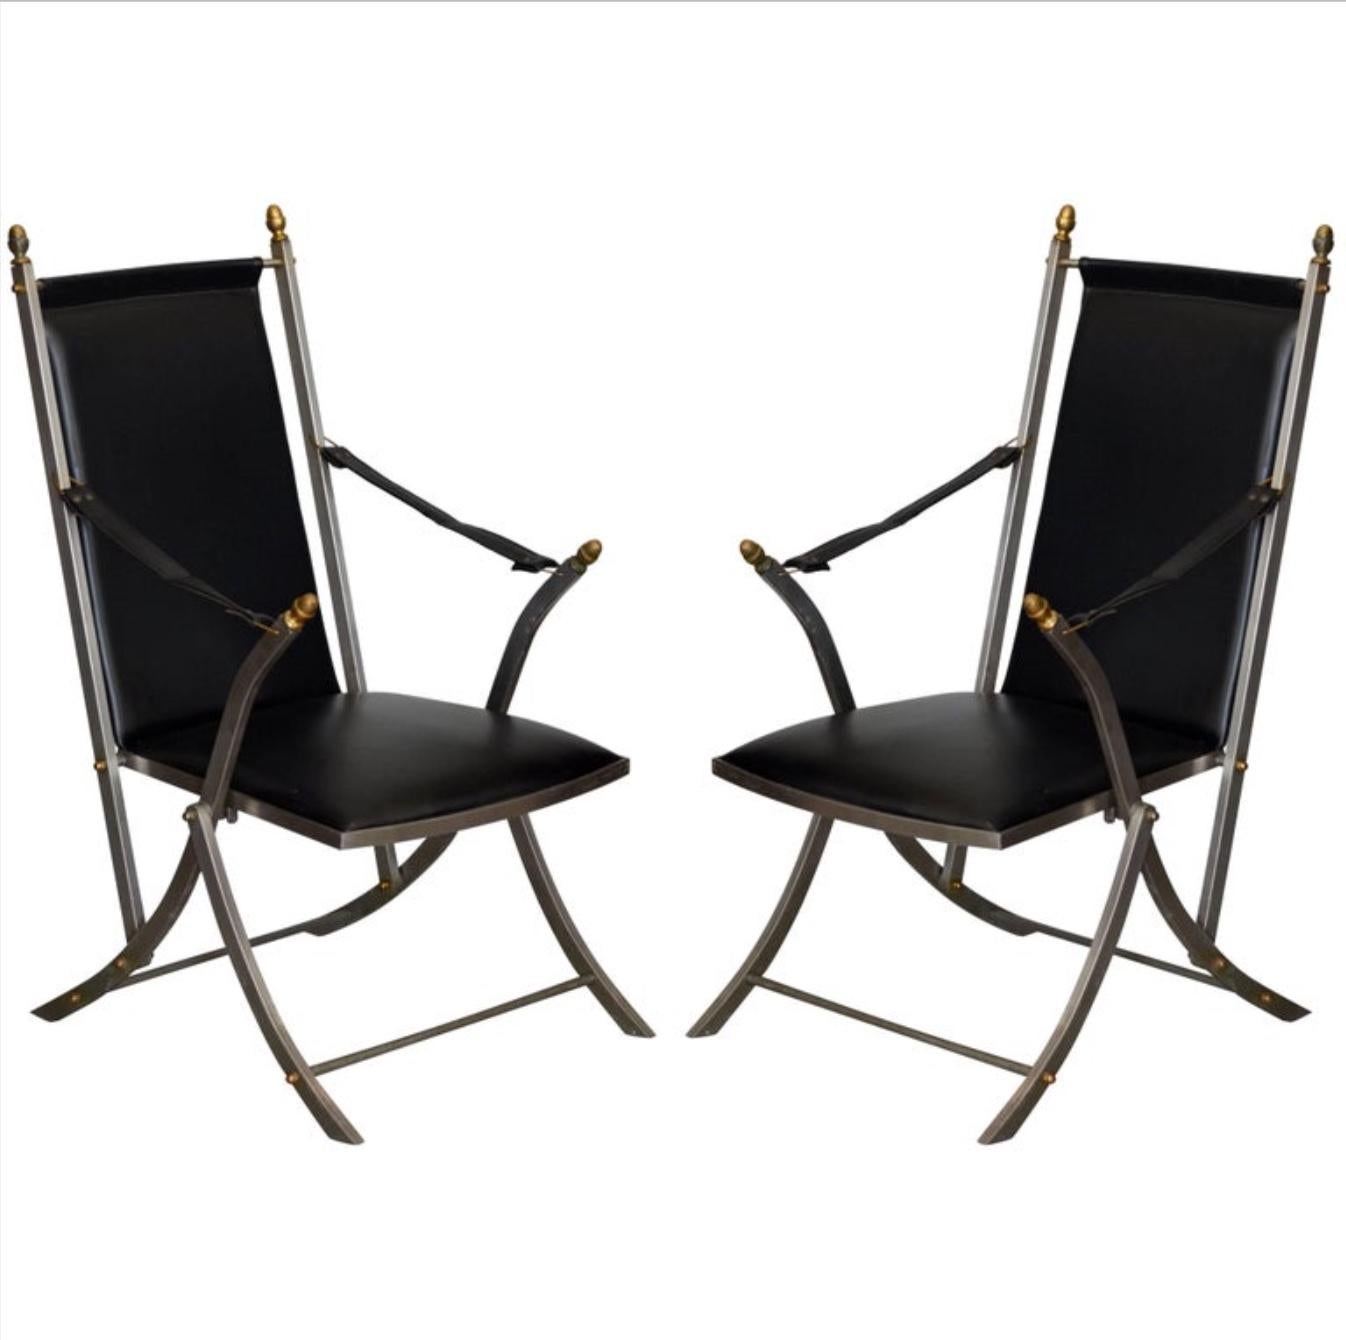 Zwei klappbare Campaign-Sessel im Stil von Otto Parzinger für Maison Jansen.